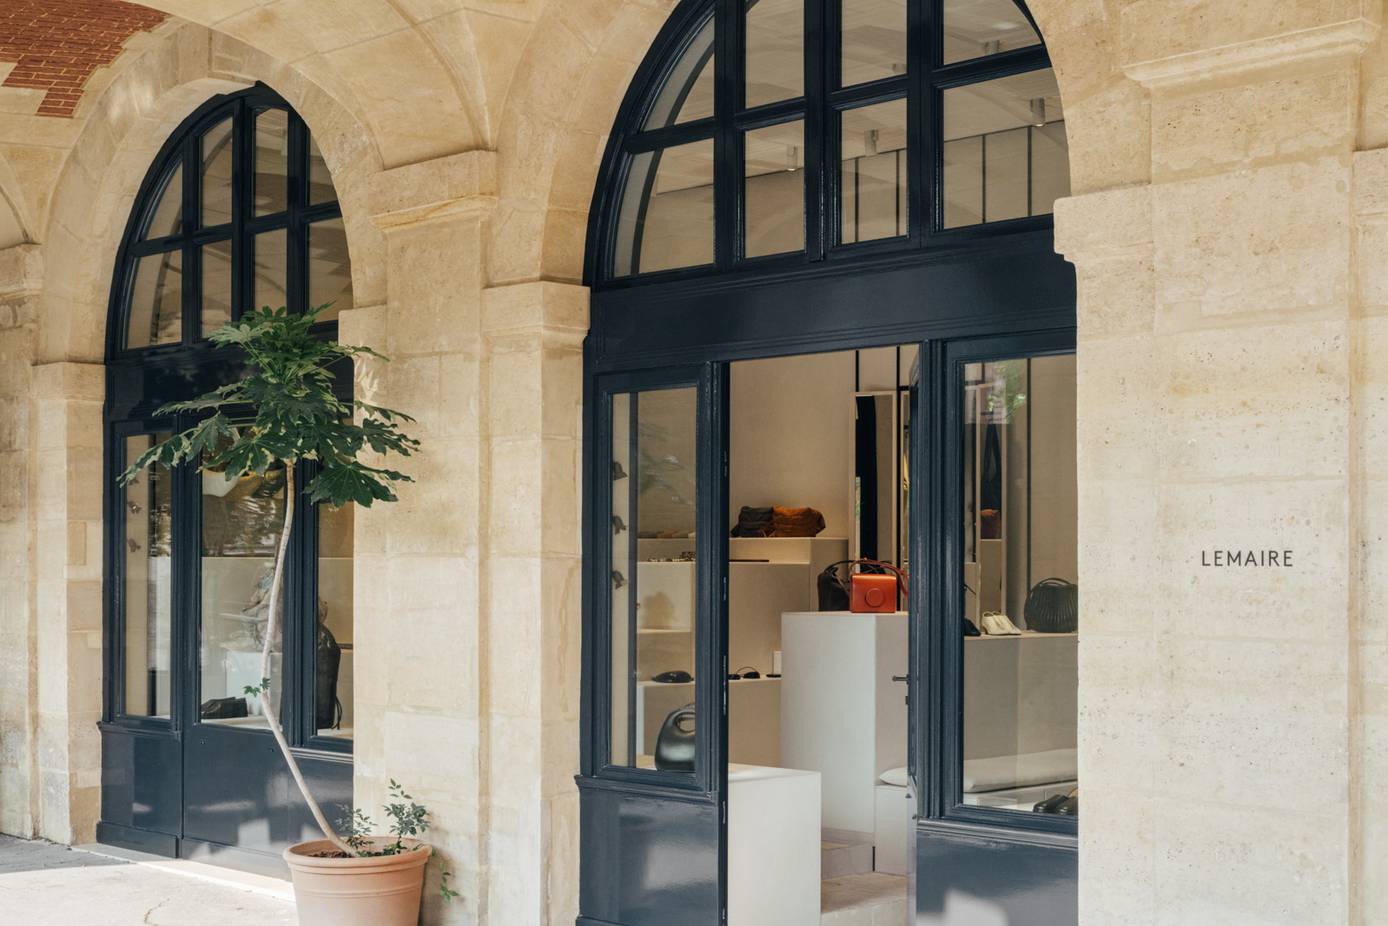 Lemaire Opens Parisian boutique in Place des Vosges